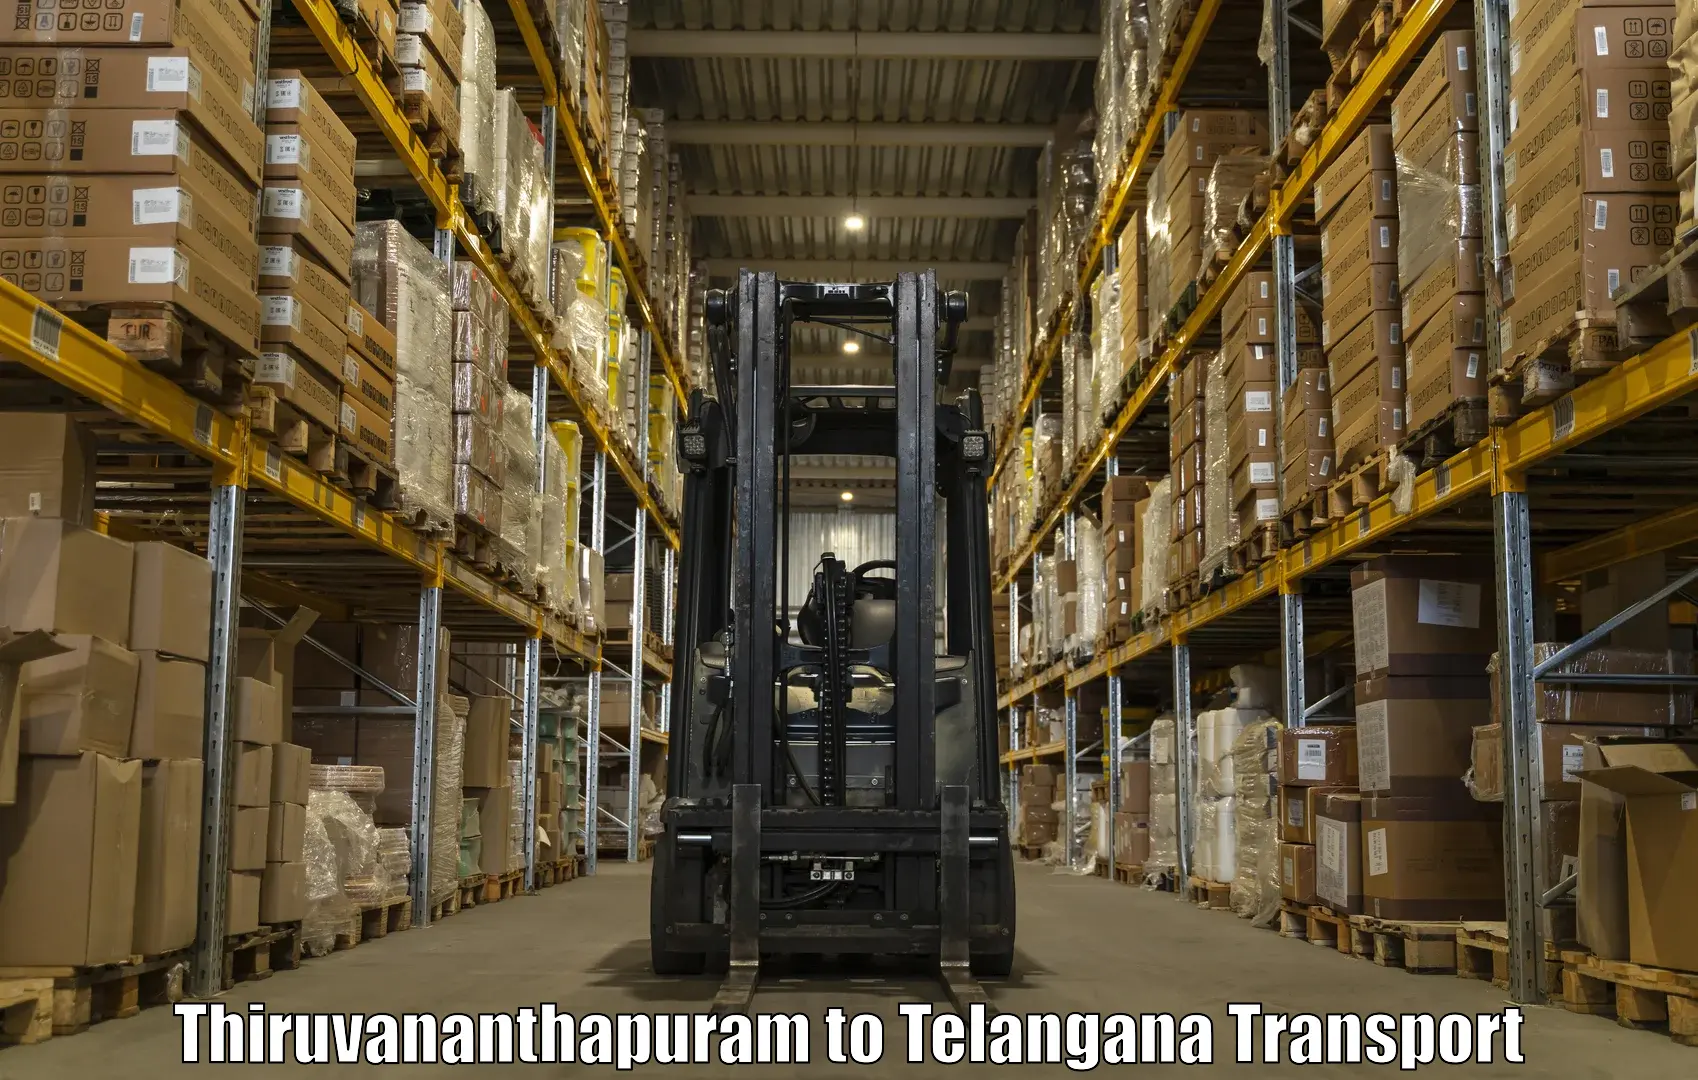 Air freight transport services Thiruvananthapuram to Peddapalli